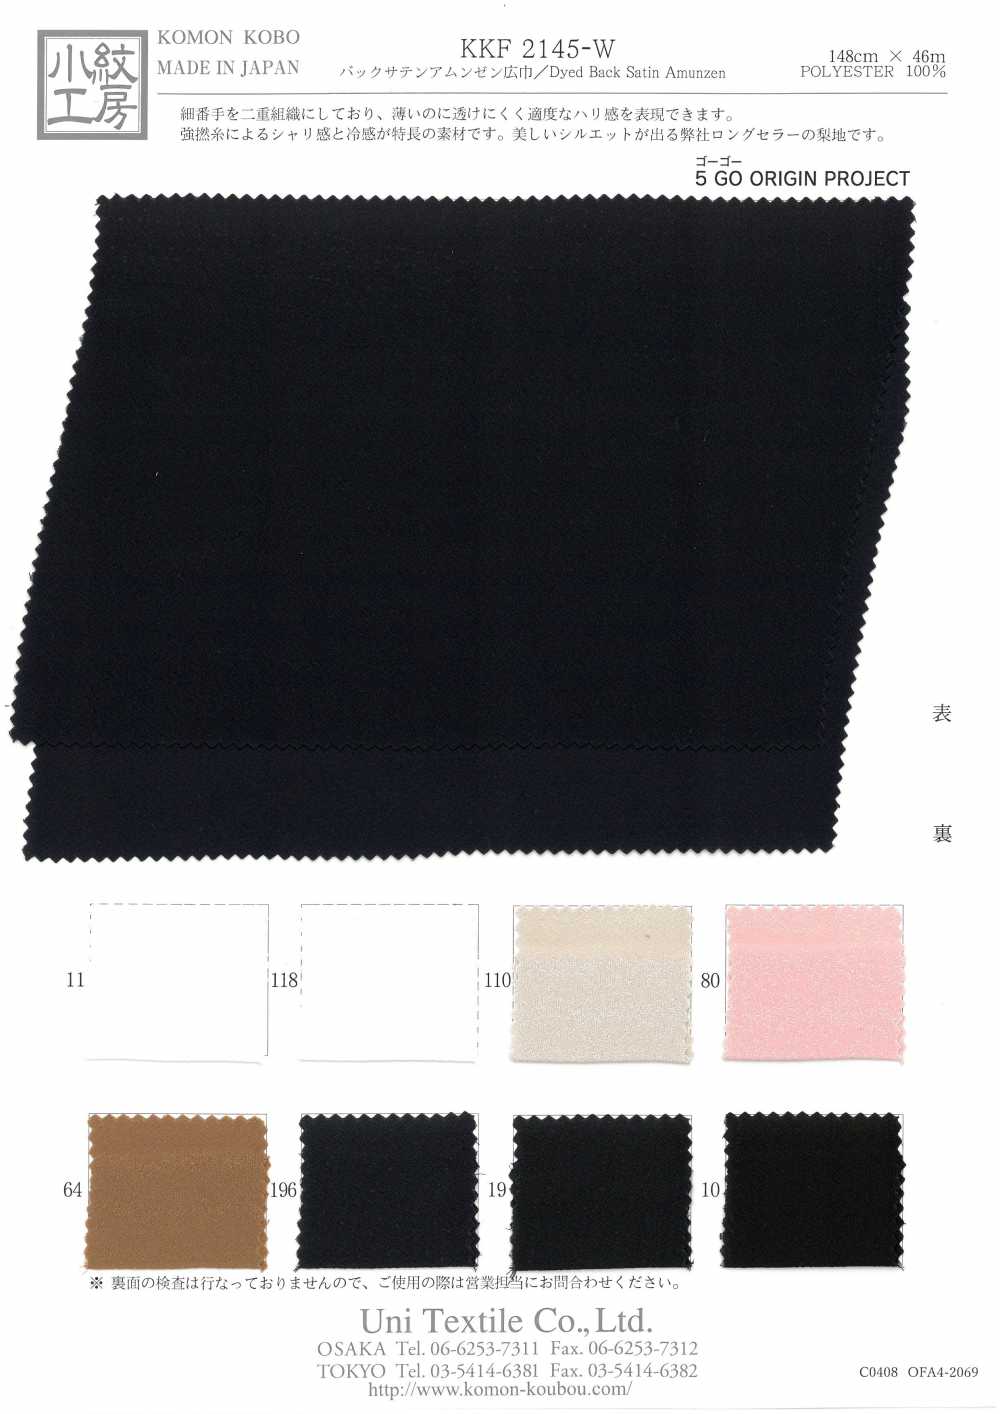 KKF2145-W Zurück Satin Rauheit Oberfläche Breite Breite[Textilgewebe] Uni Textile